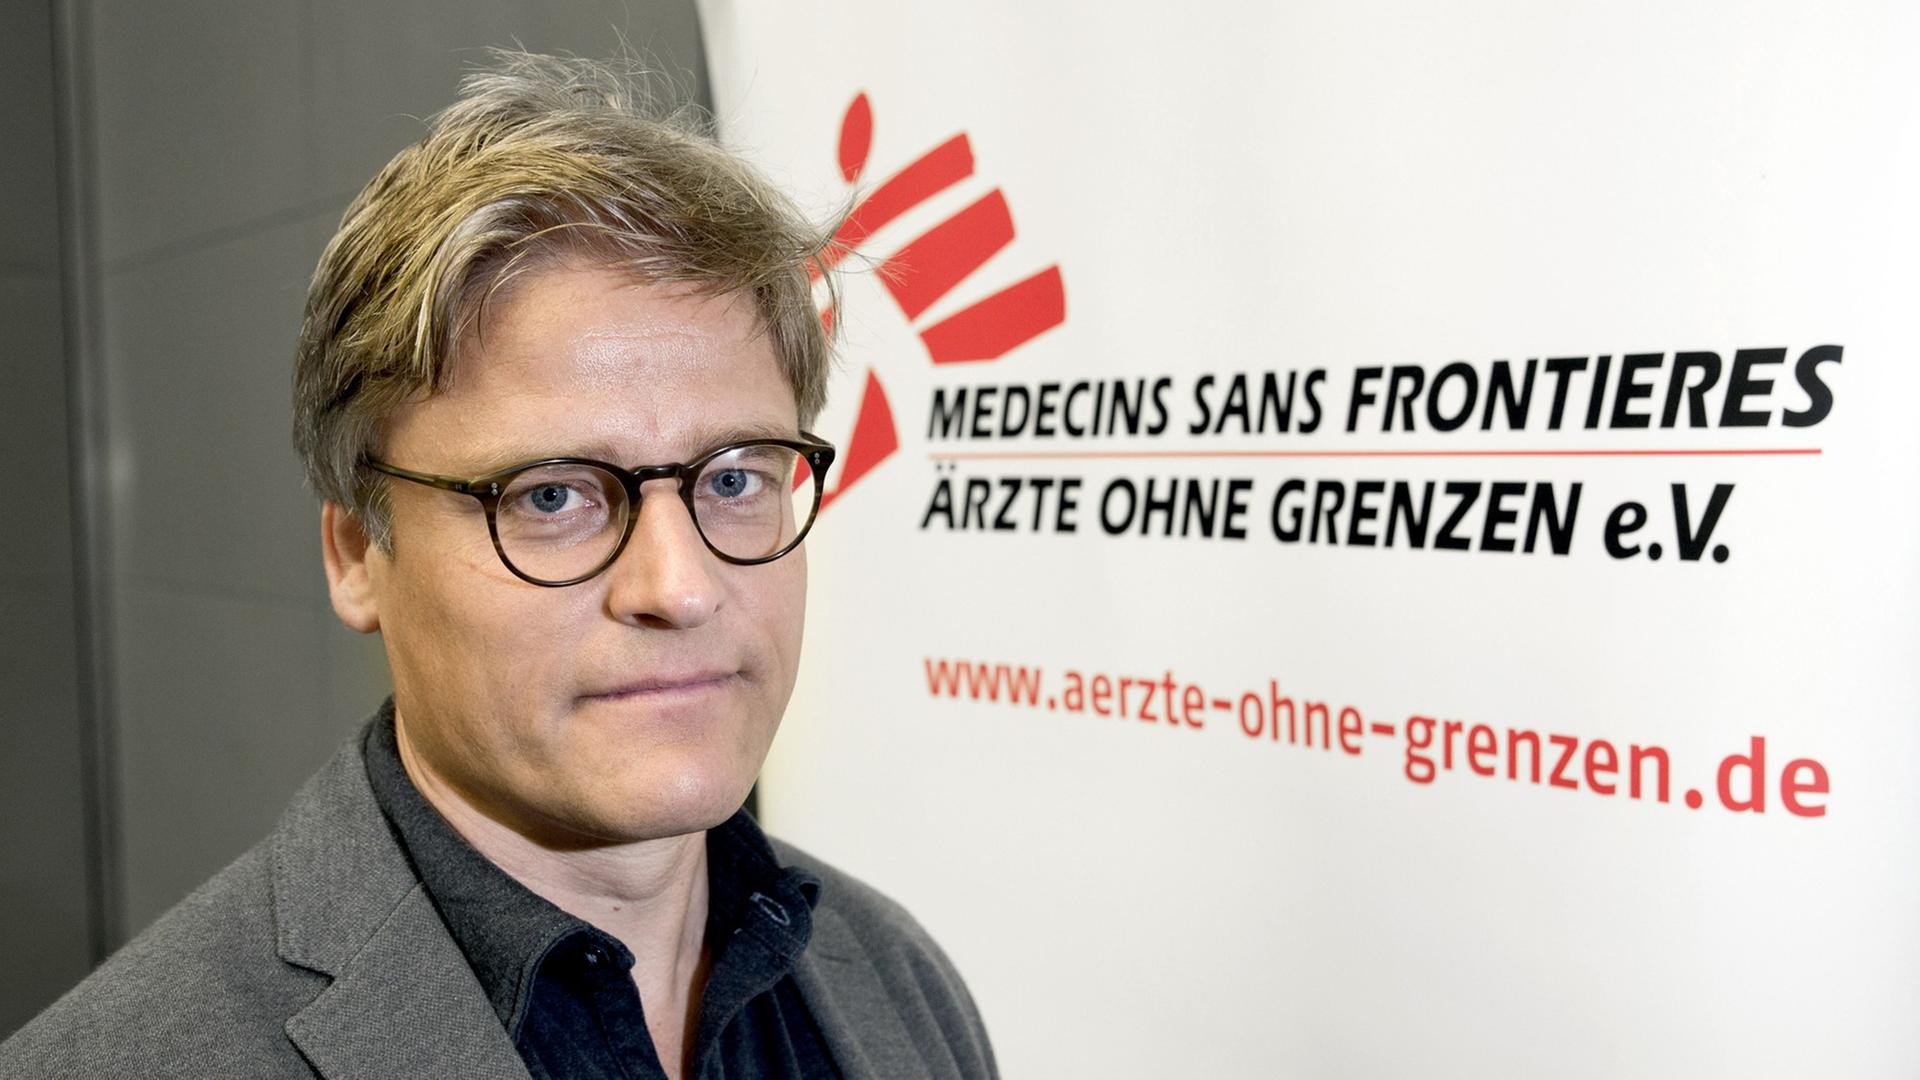 Tankred Stöbe, Vorstandschef von Ärzte ohne Grenzen, vor dem Logo der Organisation